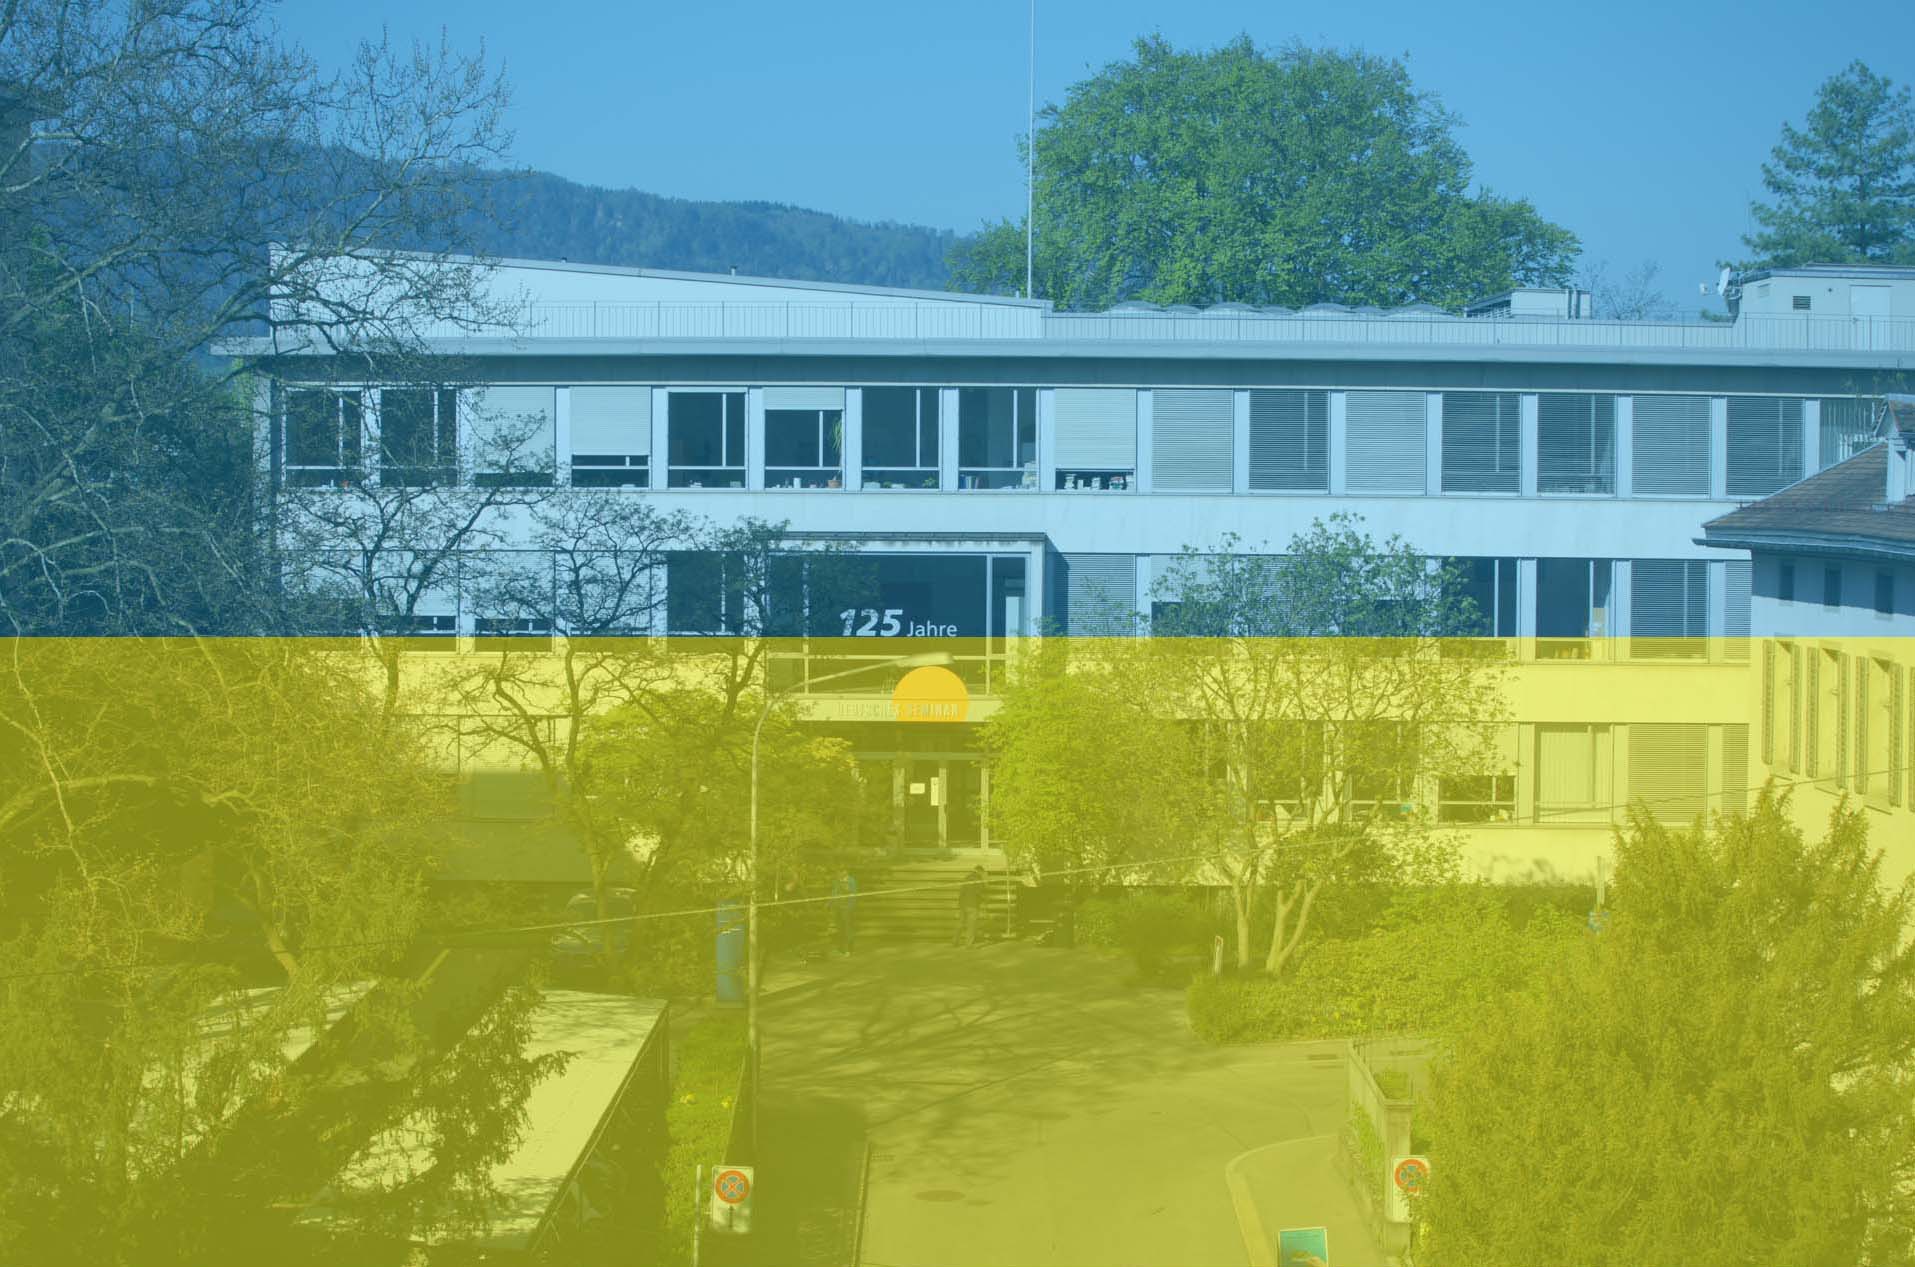 Das Foto zeigt das Seminargebäude mit den Farben der ukrainischen Flagge